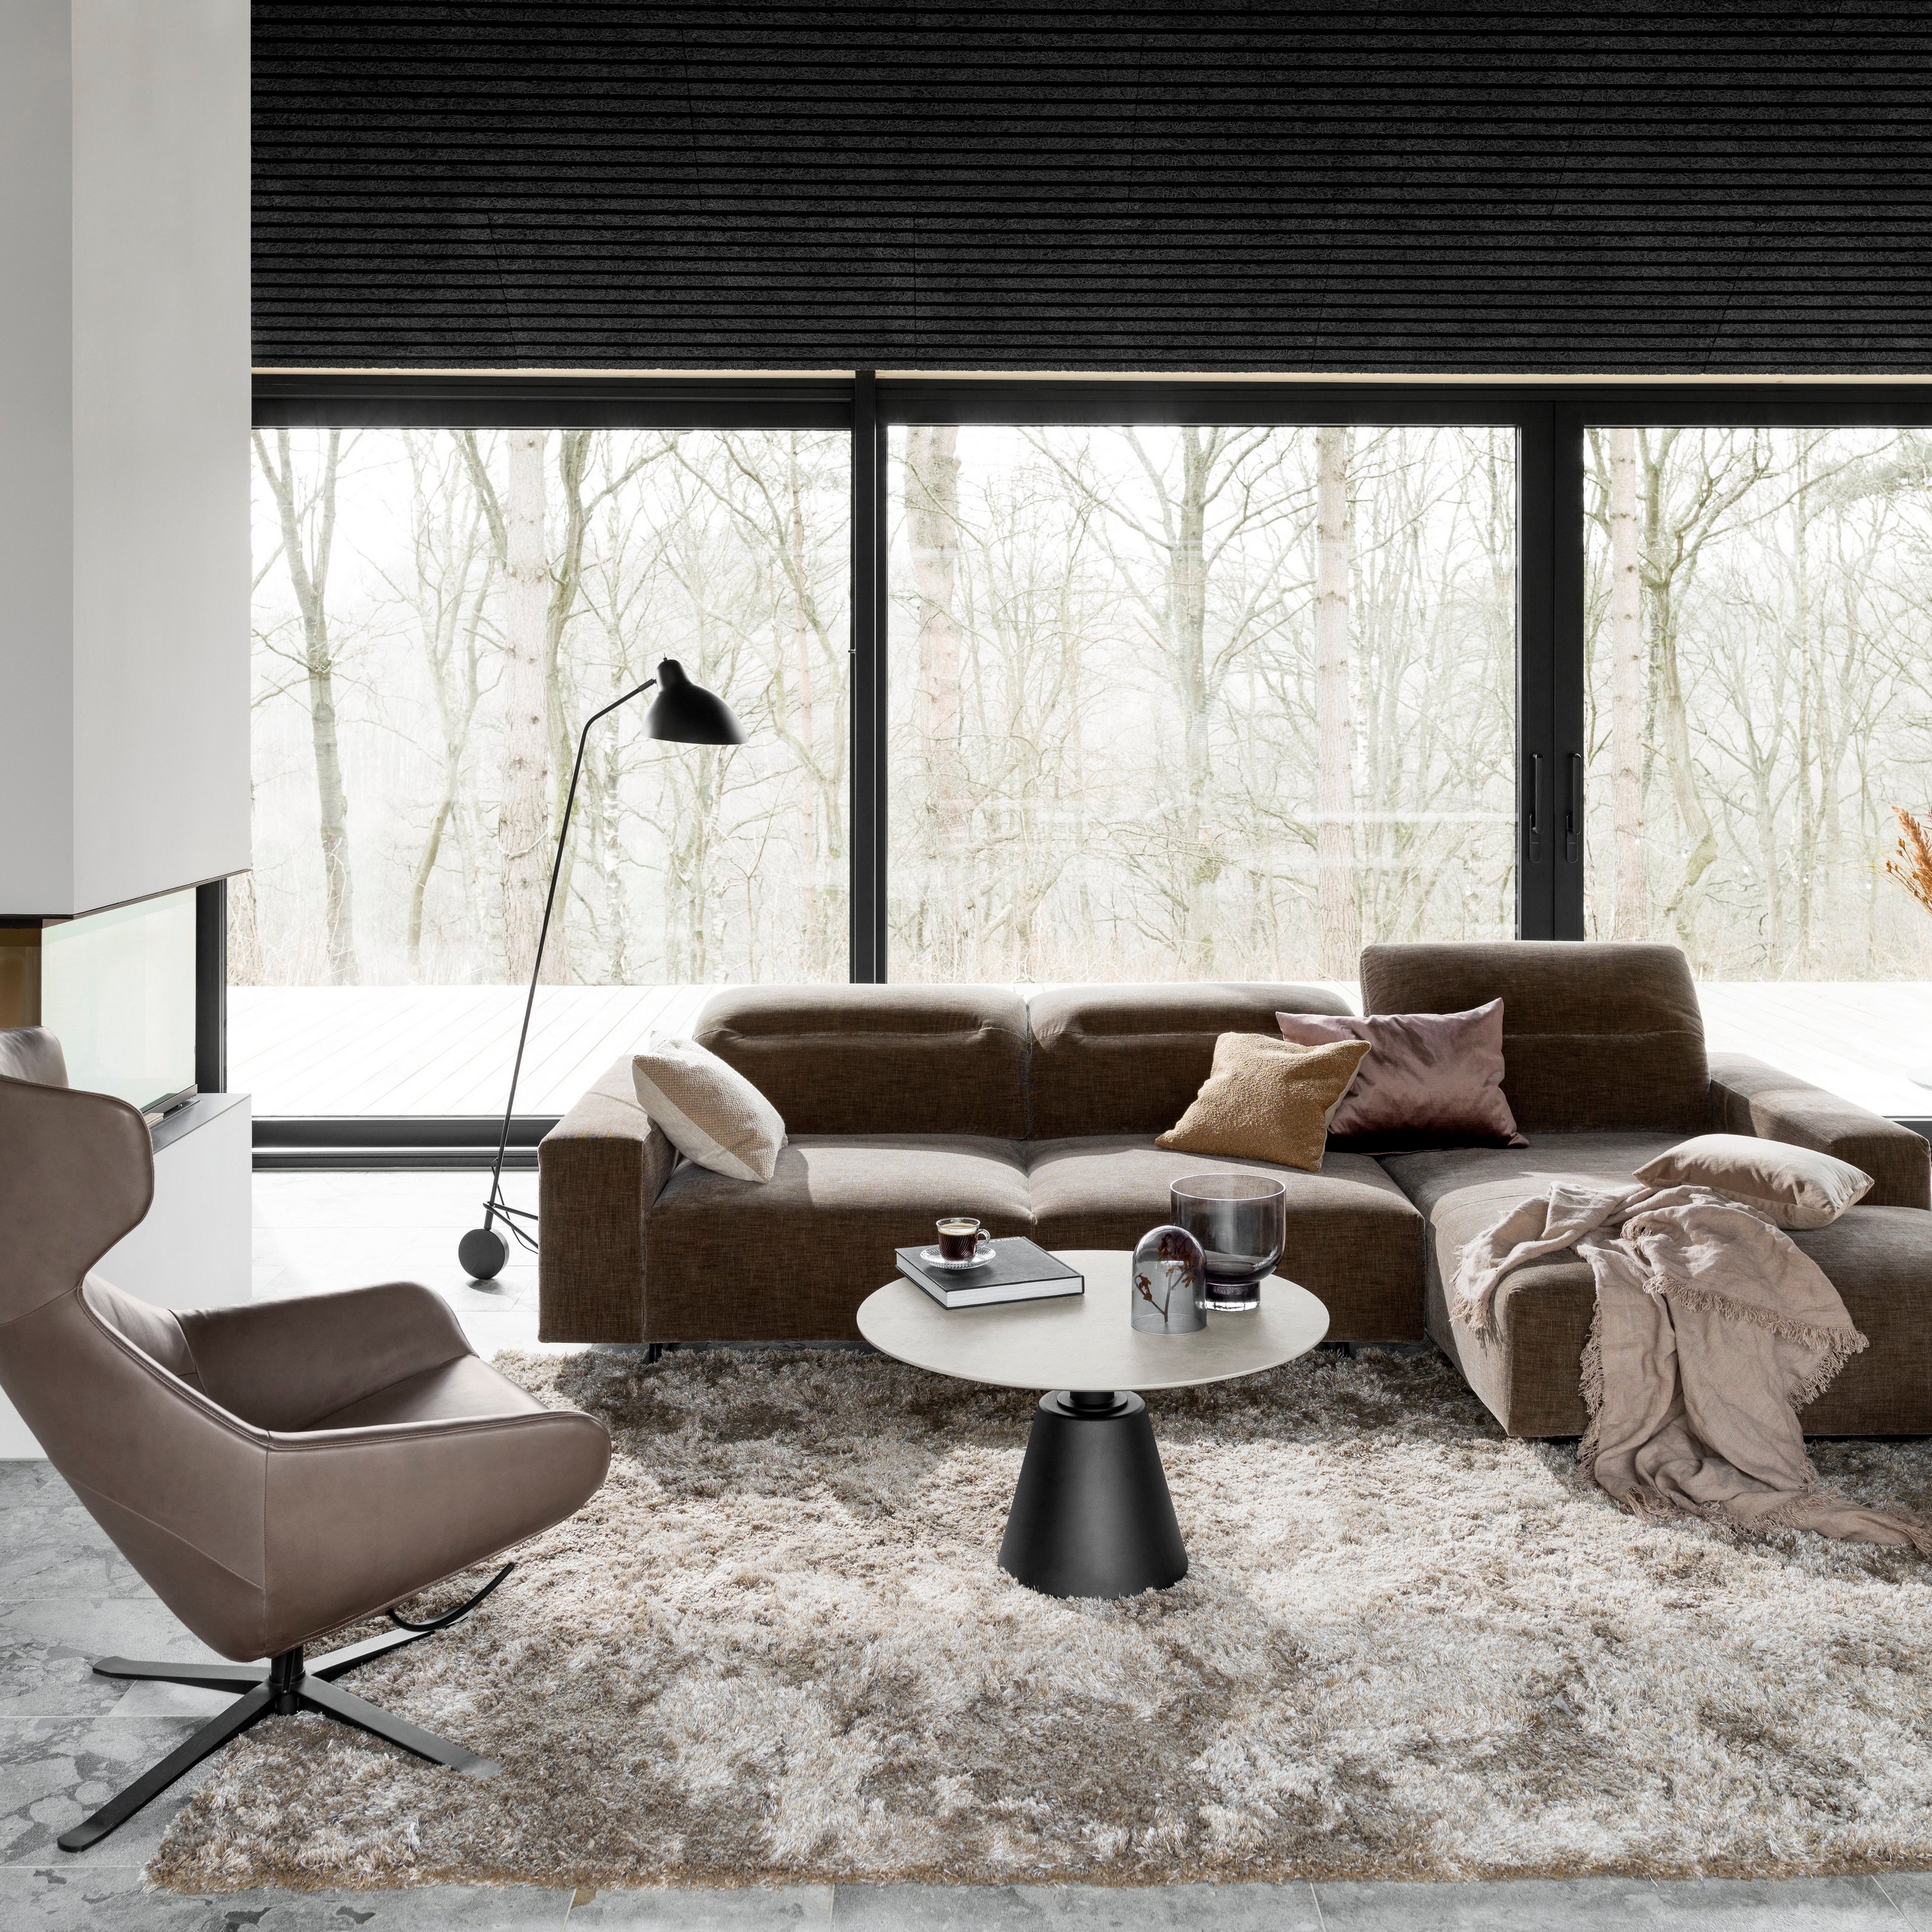 Sala de estar moderna com sofá seccional castanho, tapete cinzento e candeeiro de chão preto junto à janela.